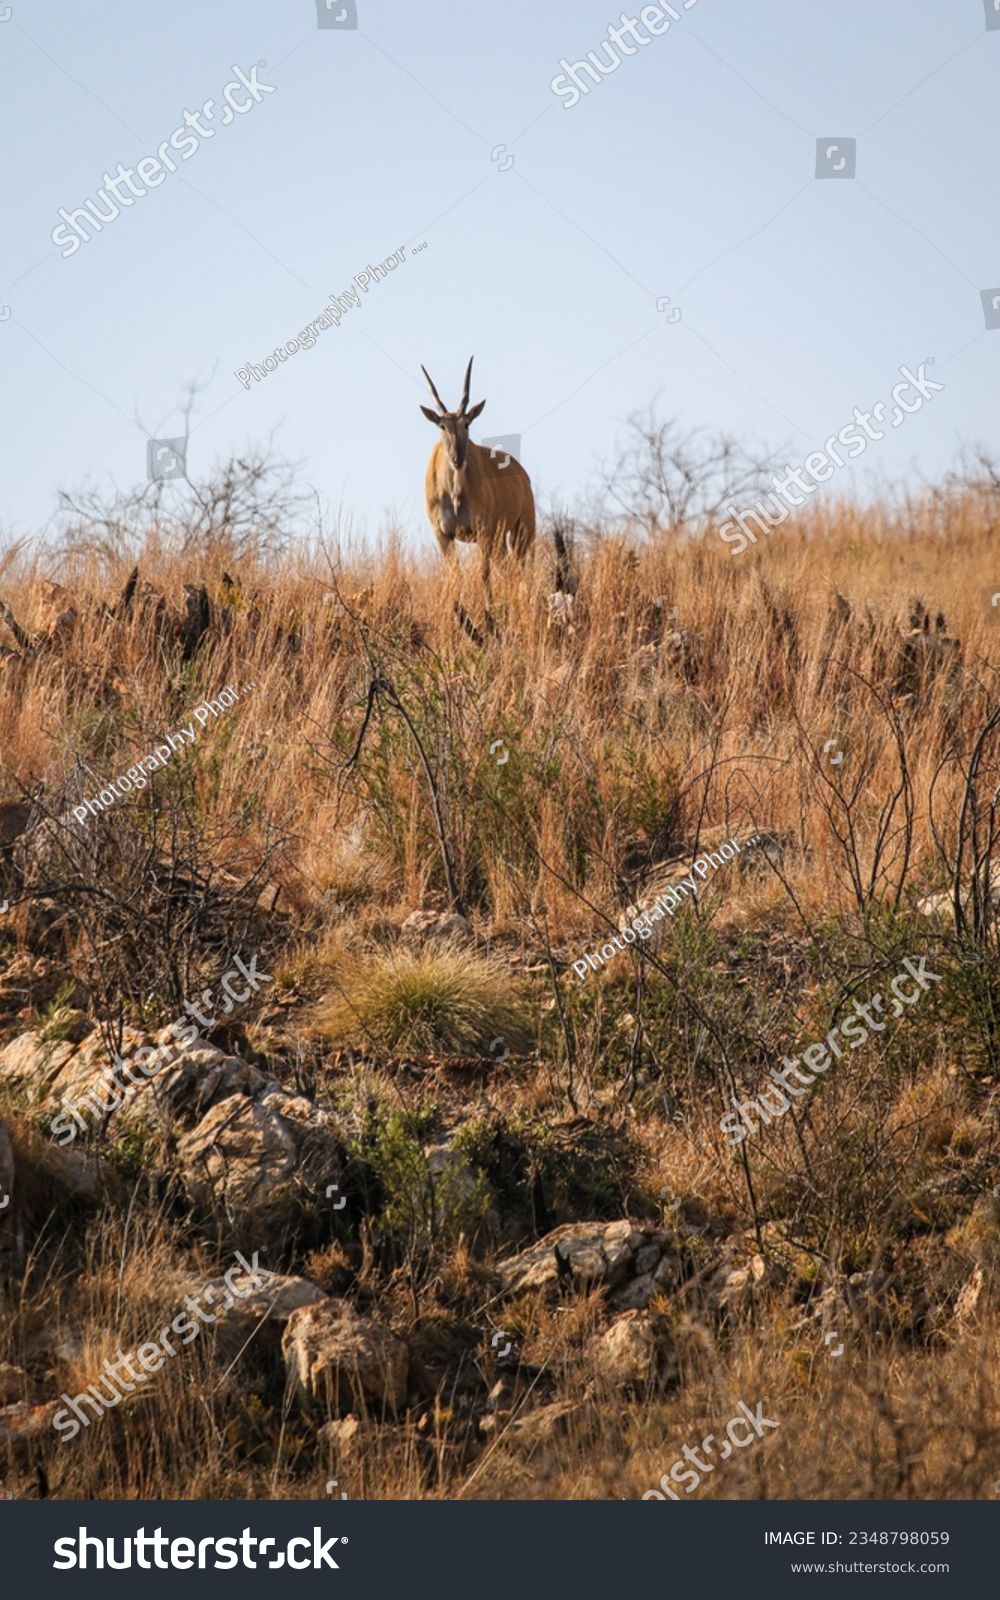 Eland antelope, Kruger National Park, South Africa #2348798059